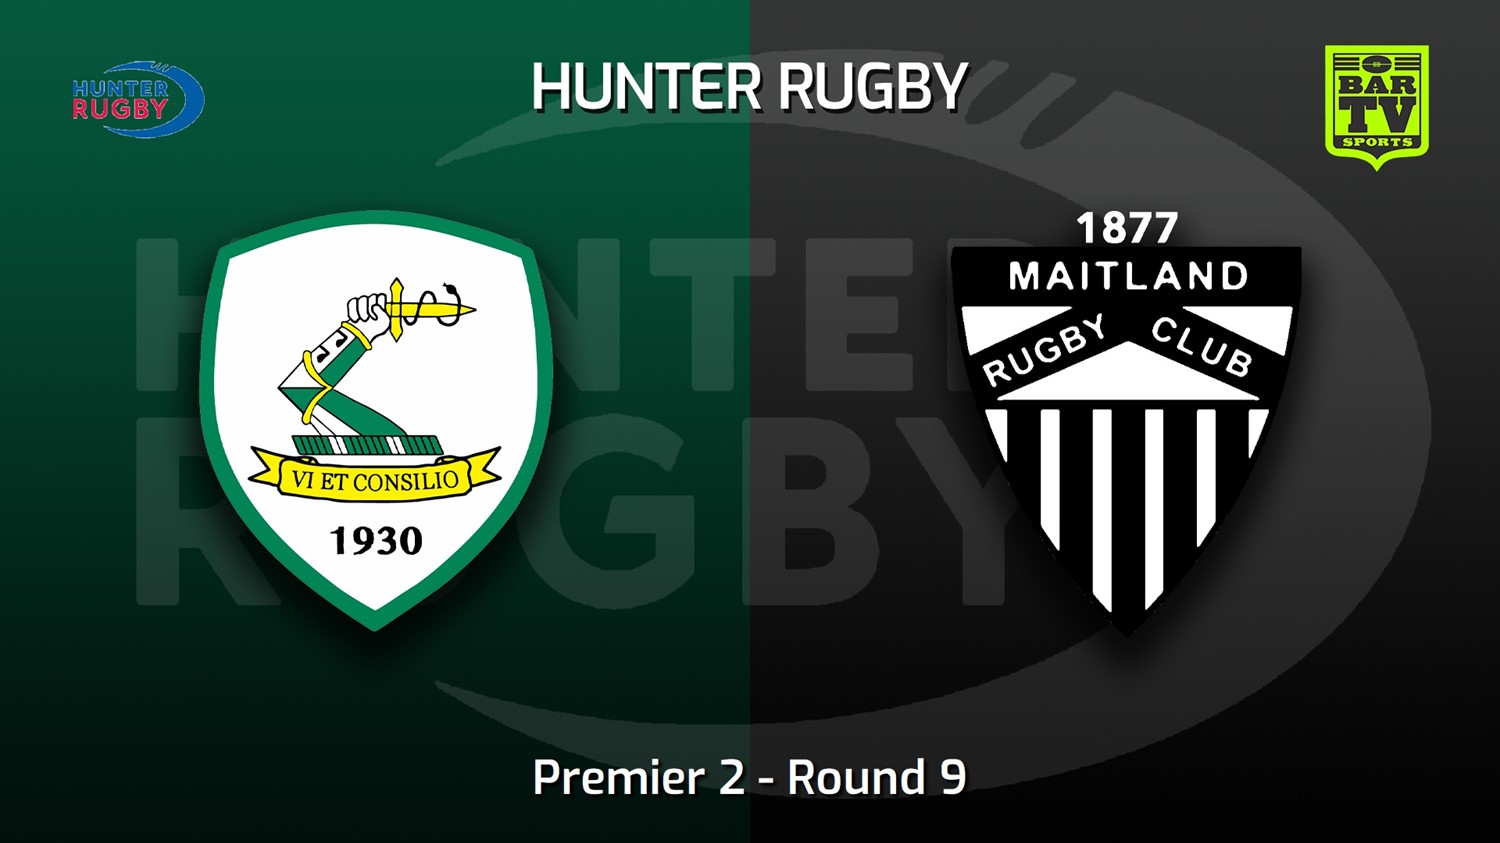 220625-Hunter Rugby Round 9 - Premier 2 - Merewether Carlton v Maitland Slate Image